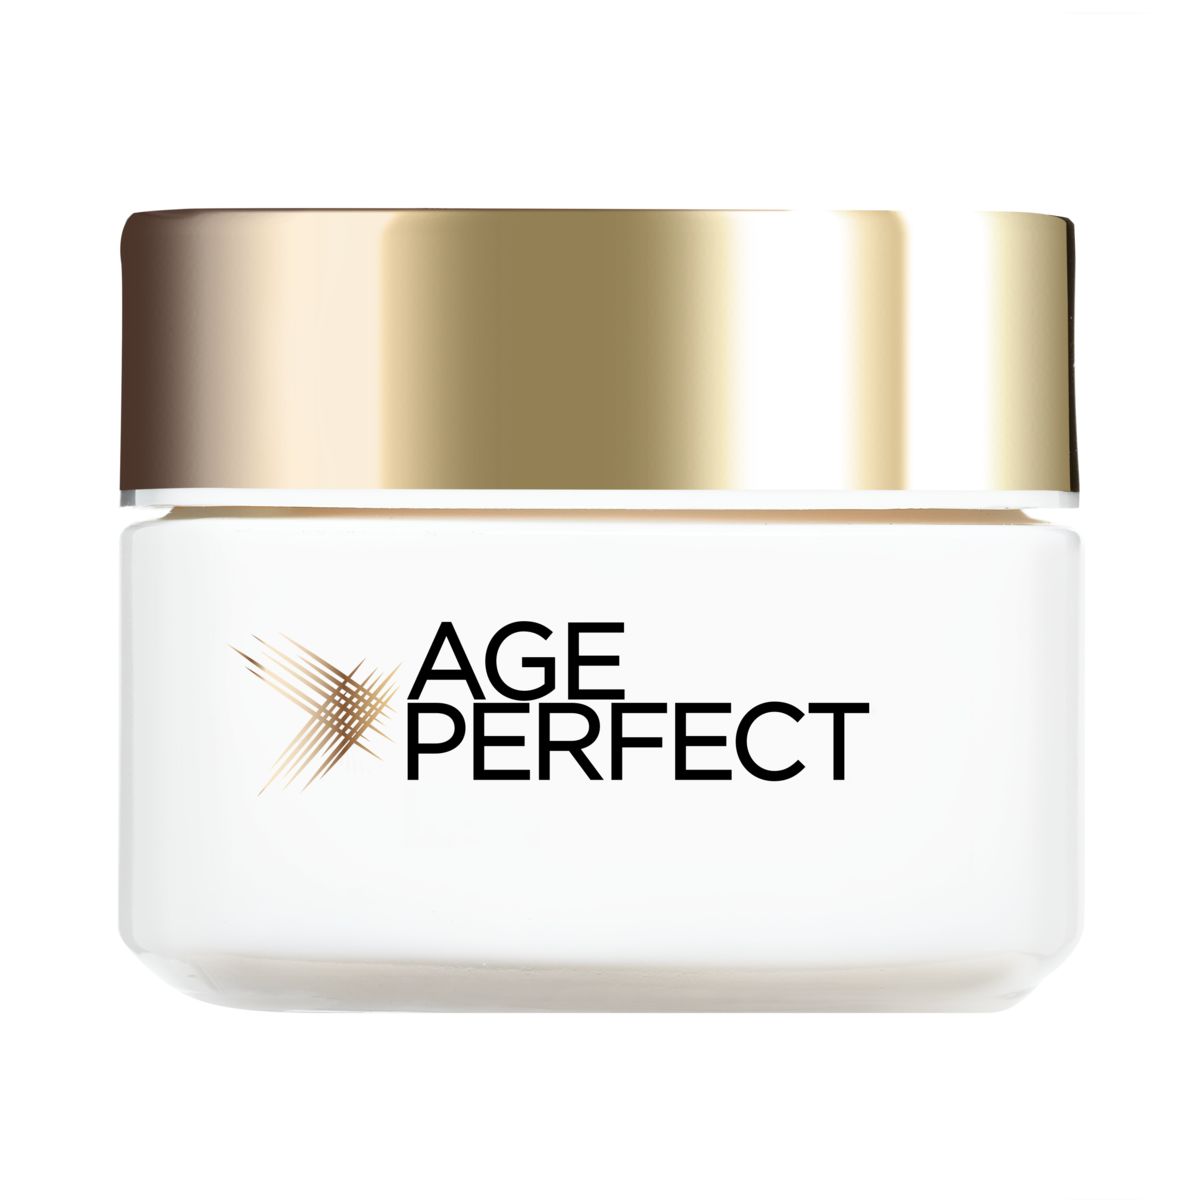 L'Oréal Paris Age Perfect Re-hydraterend verzorging rijpe huid 50 ml